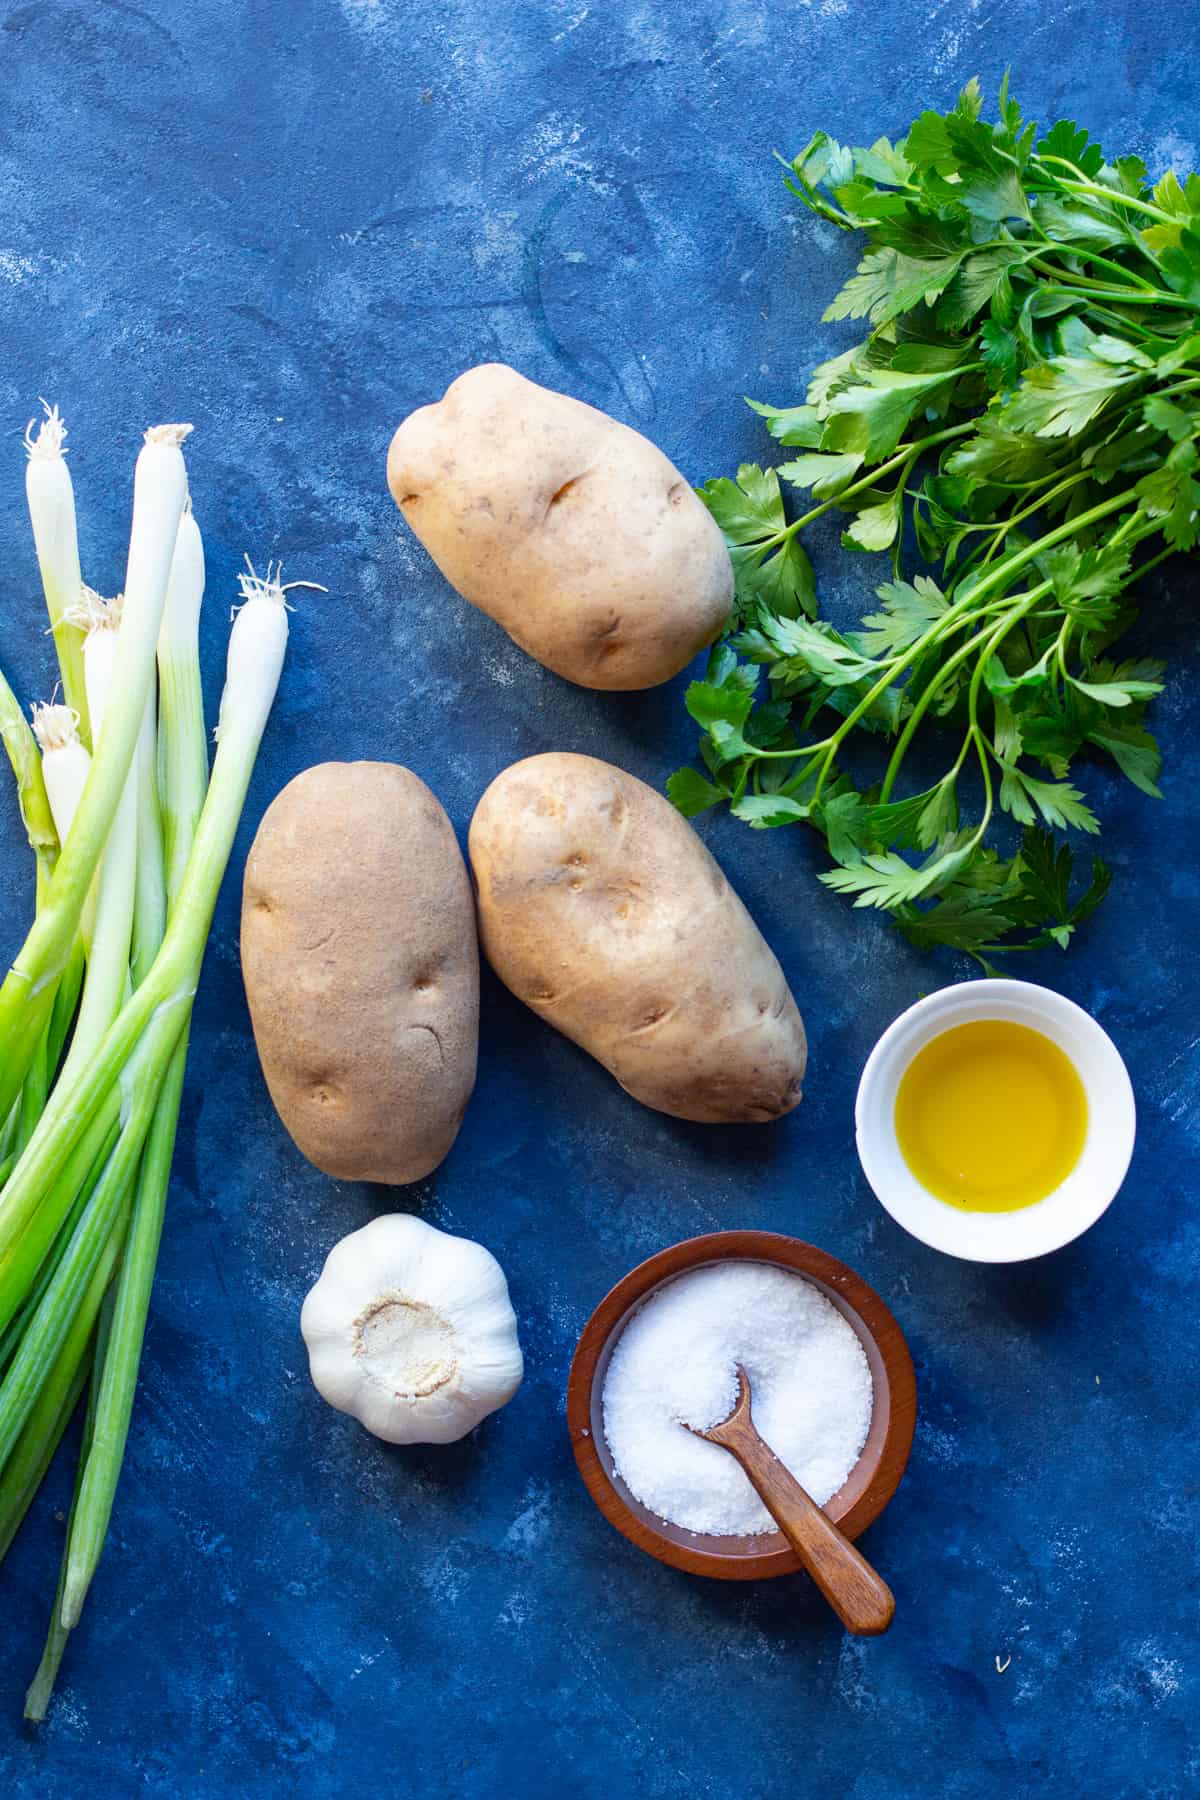 Ingredients to make skordhalia are potatoes, garlic, olive oil, lemon juice, salt and herbs